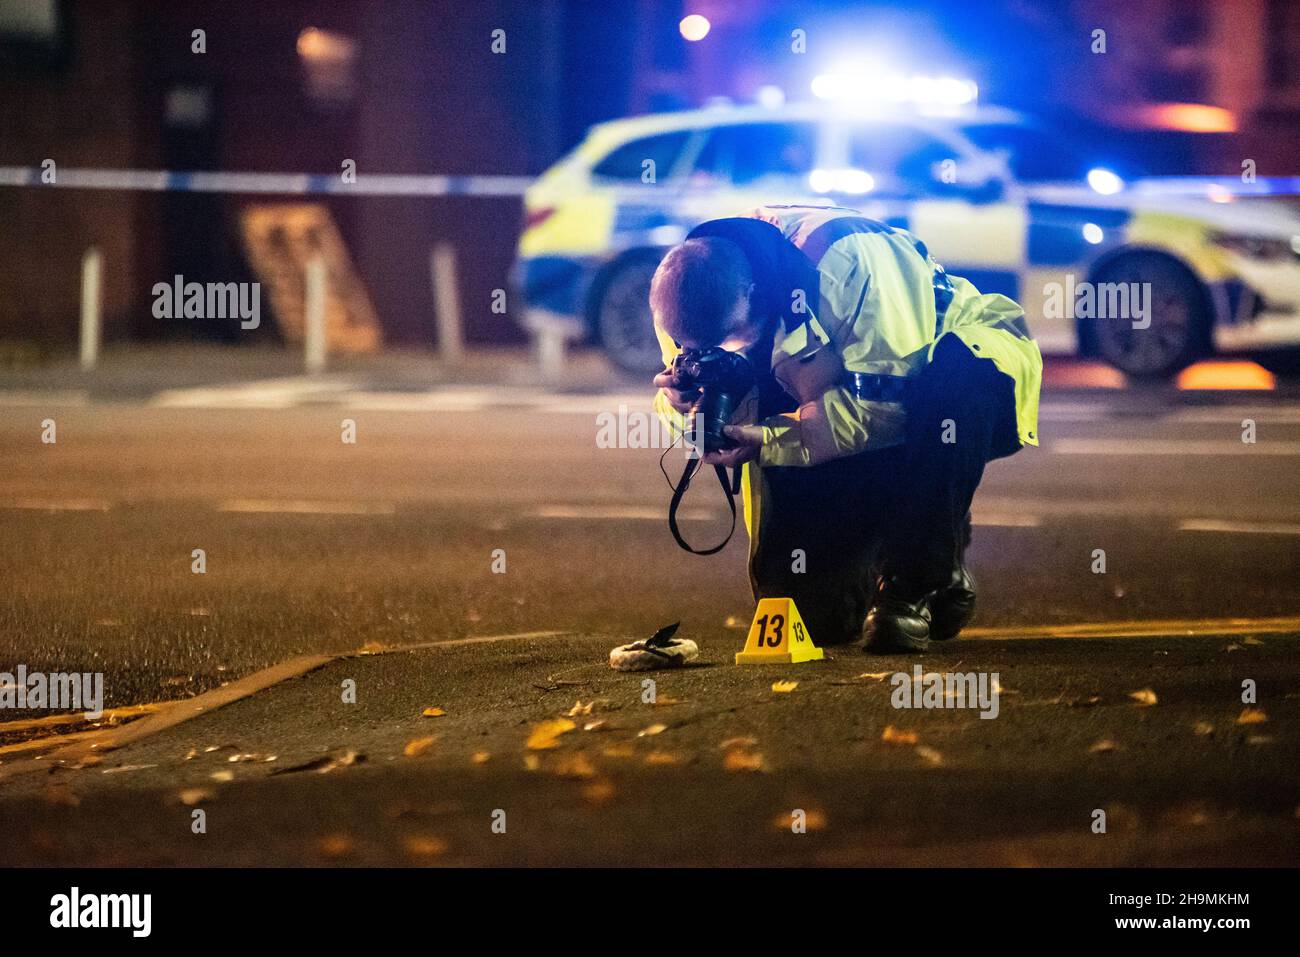 Investigador forense de colisión de la policía de West Midlands, Erdington, Birmingham fotografiando pruebas junto a un cono de evidencia numerado 13. Foto de stock